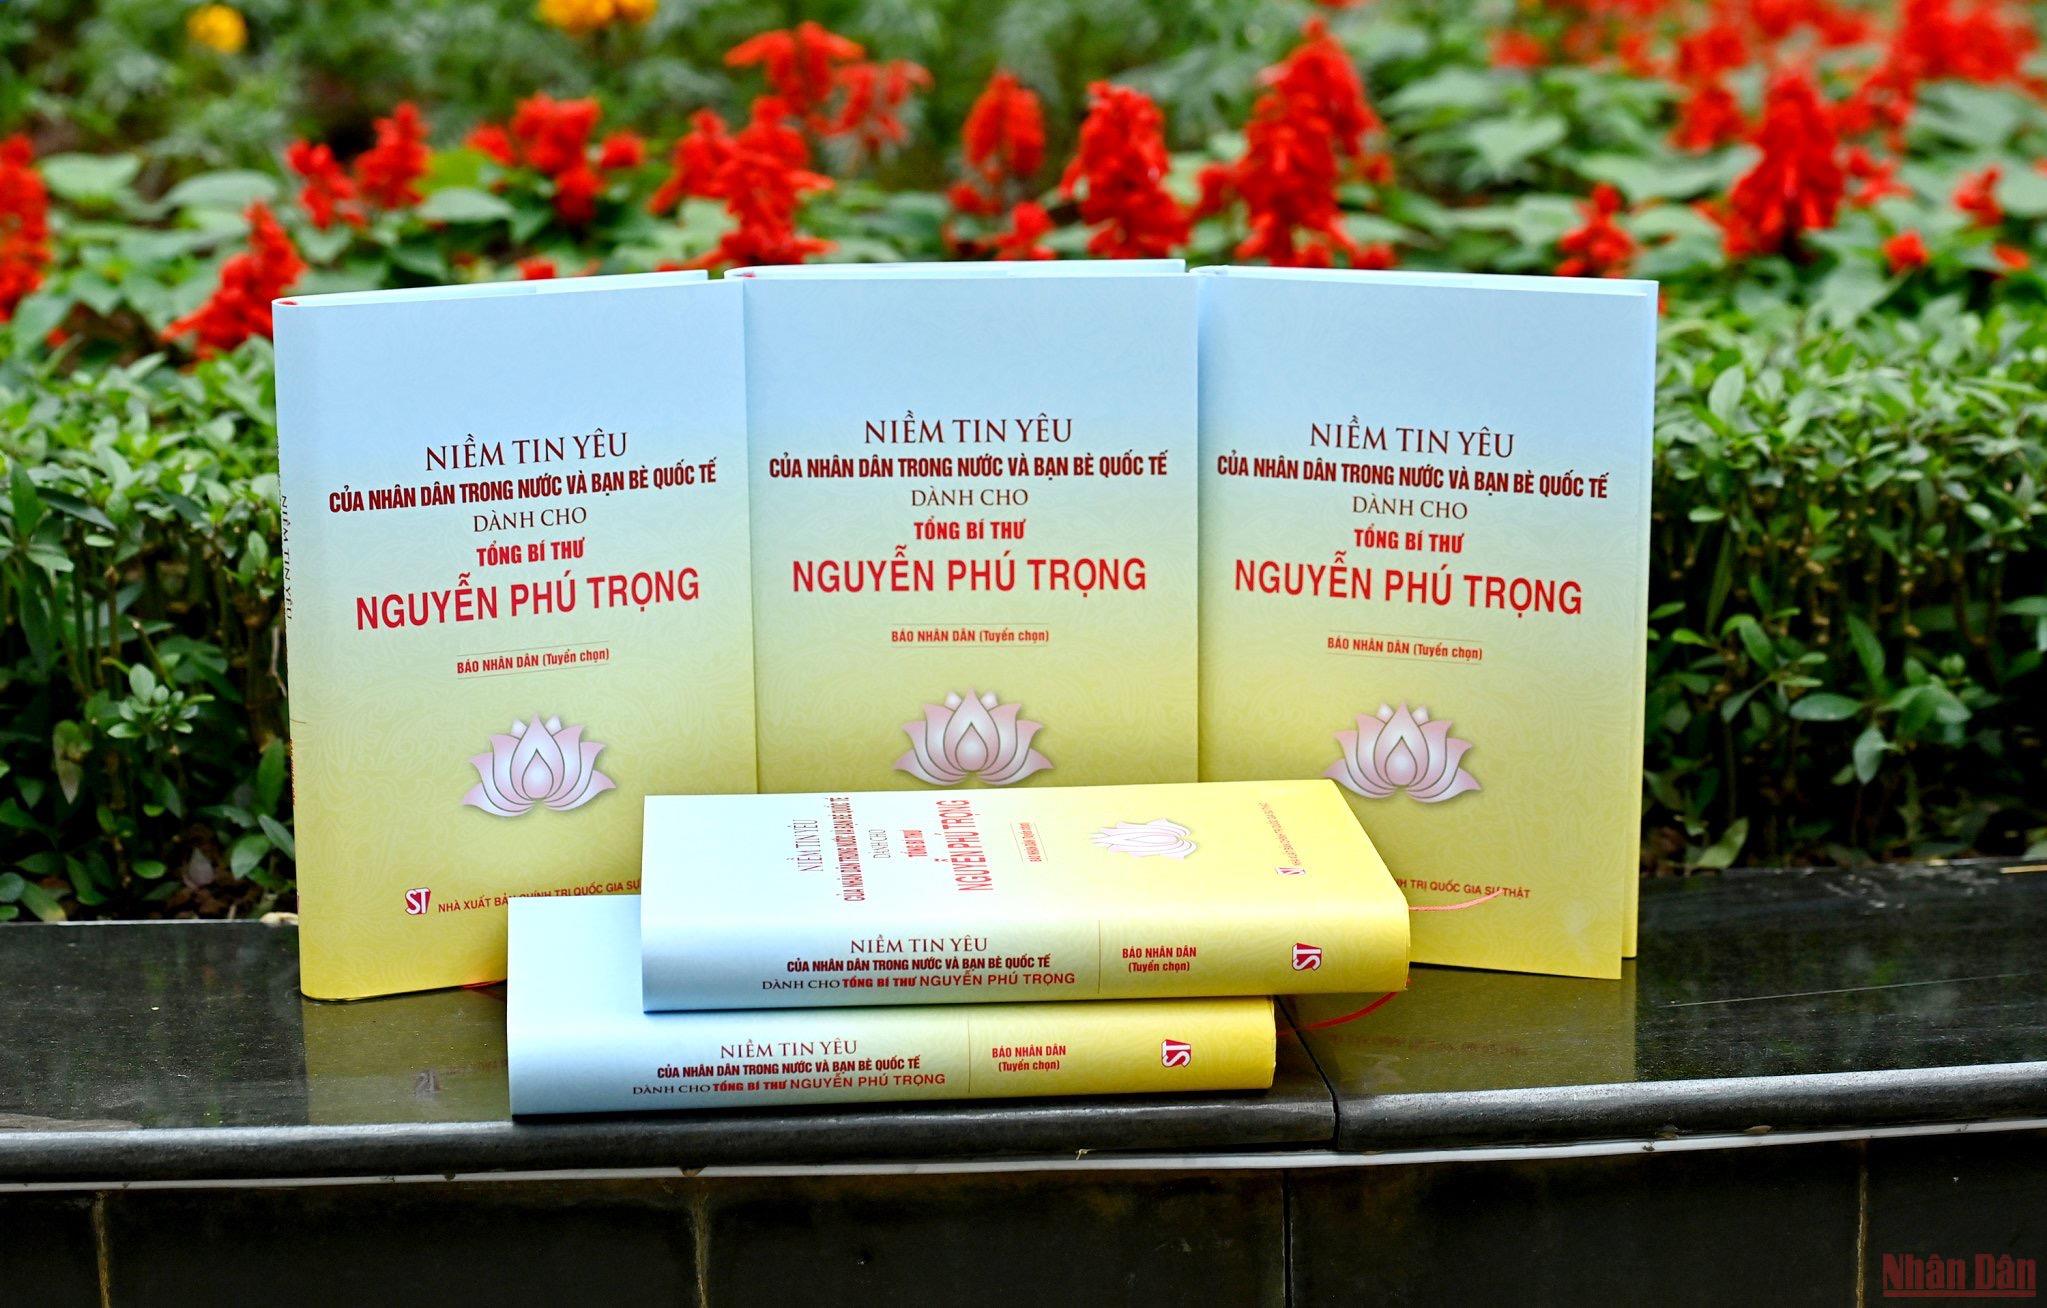 Giới thiệu cuốn sách “Niềm tin yêu của nhân dân và bạn bè quốc tế dành cho Tổng Bí thư Nguyễn Phú Trọng” -0